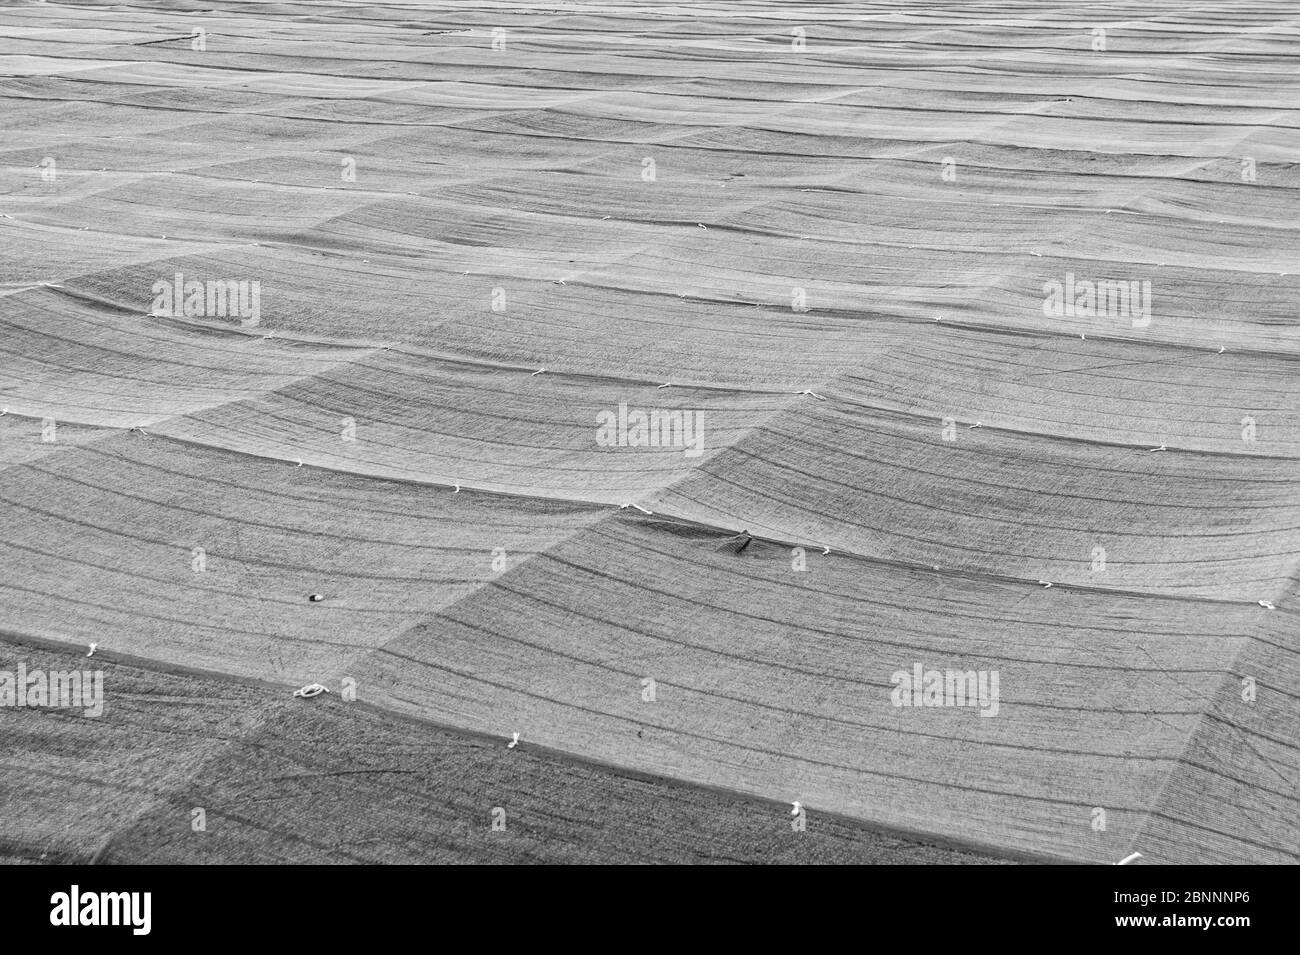 Filet d'ombre agricole utilisé dans les plantations de thé vert de Fuji City, préfecture de Shizuoka, Japon. Vue perpendiculaire. Tir horizontal. Banque D'Images